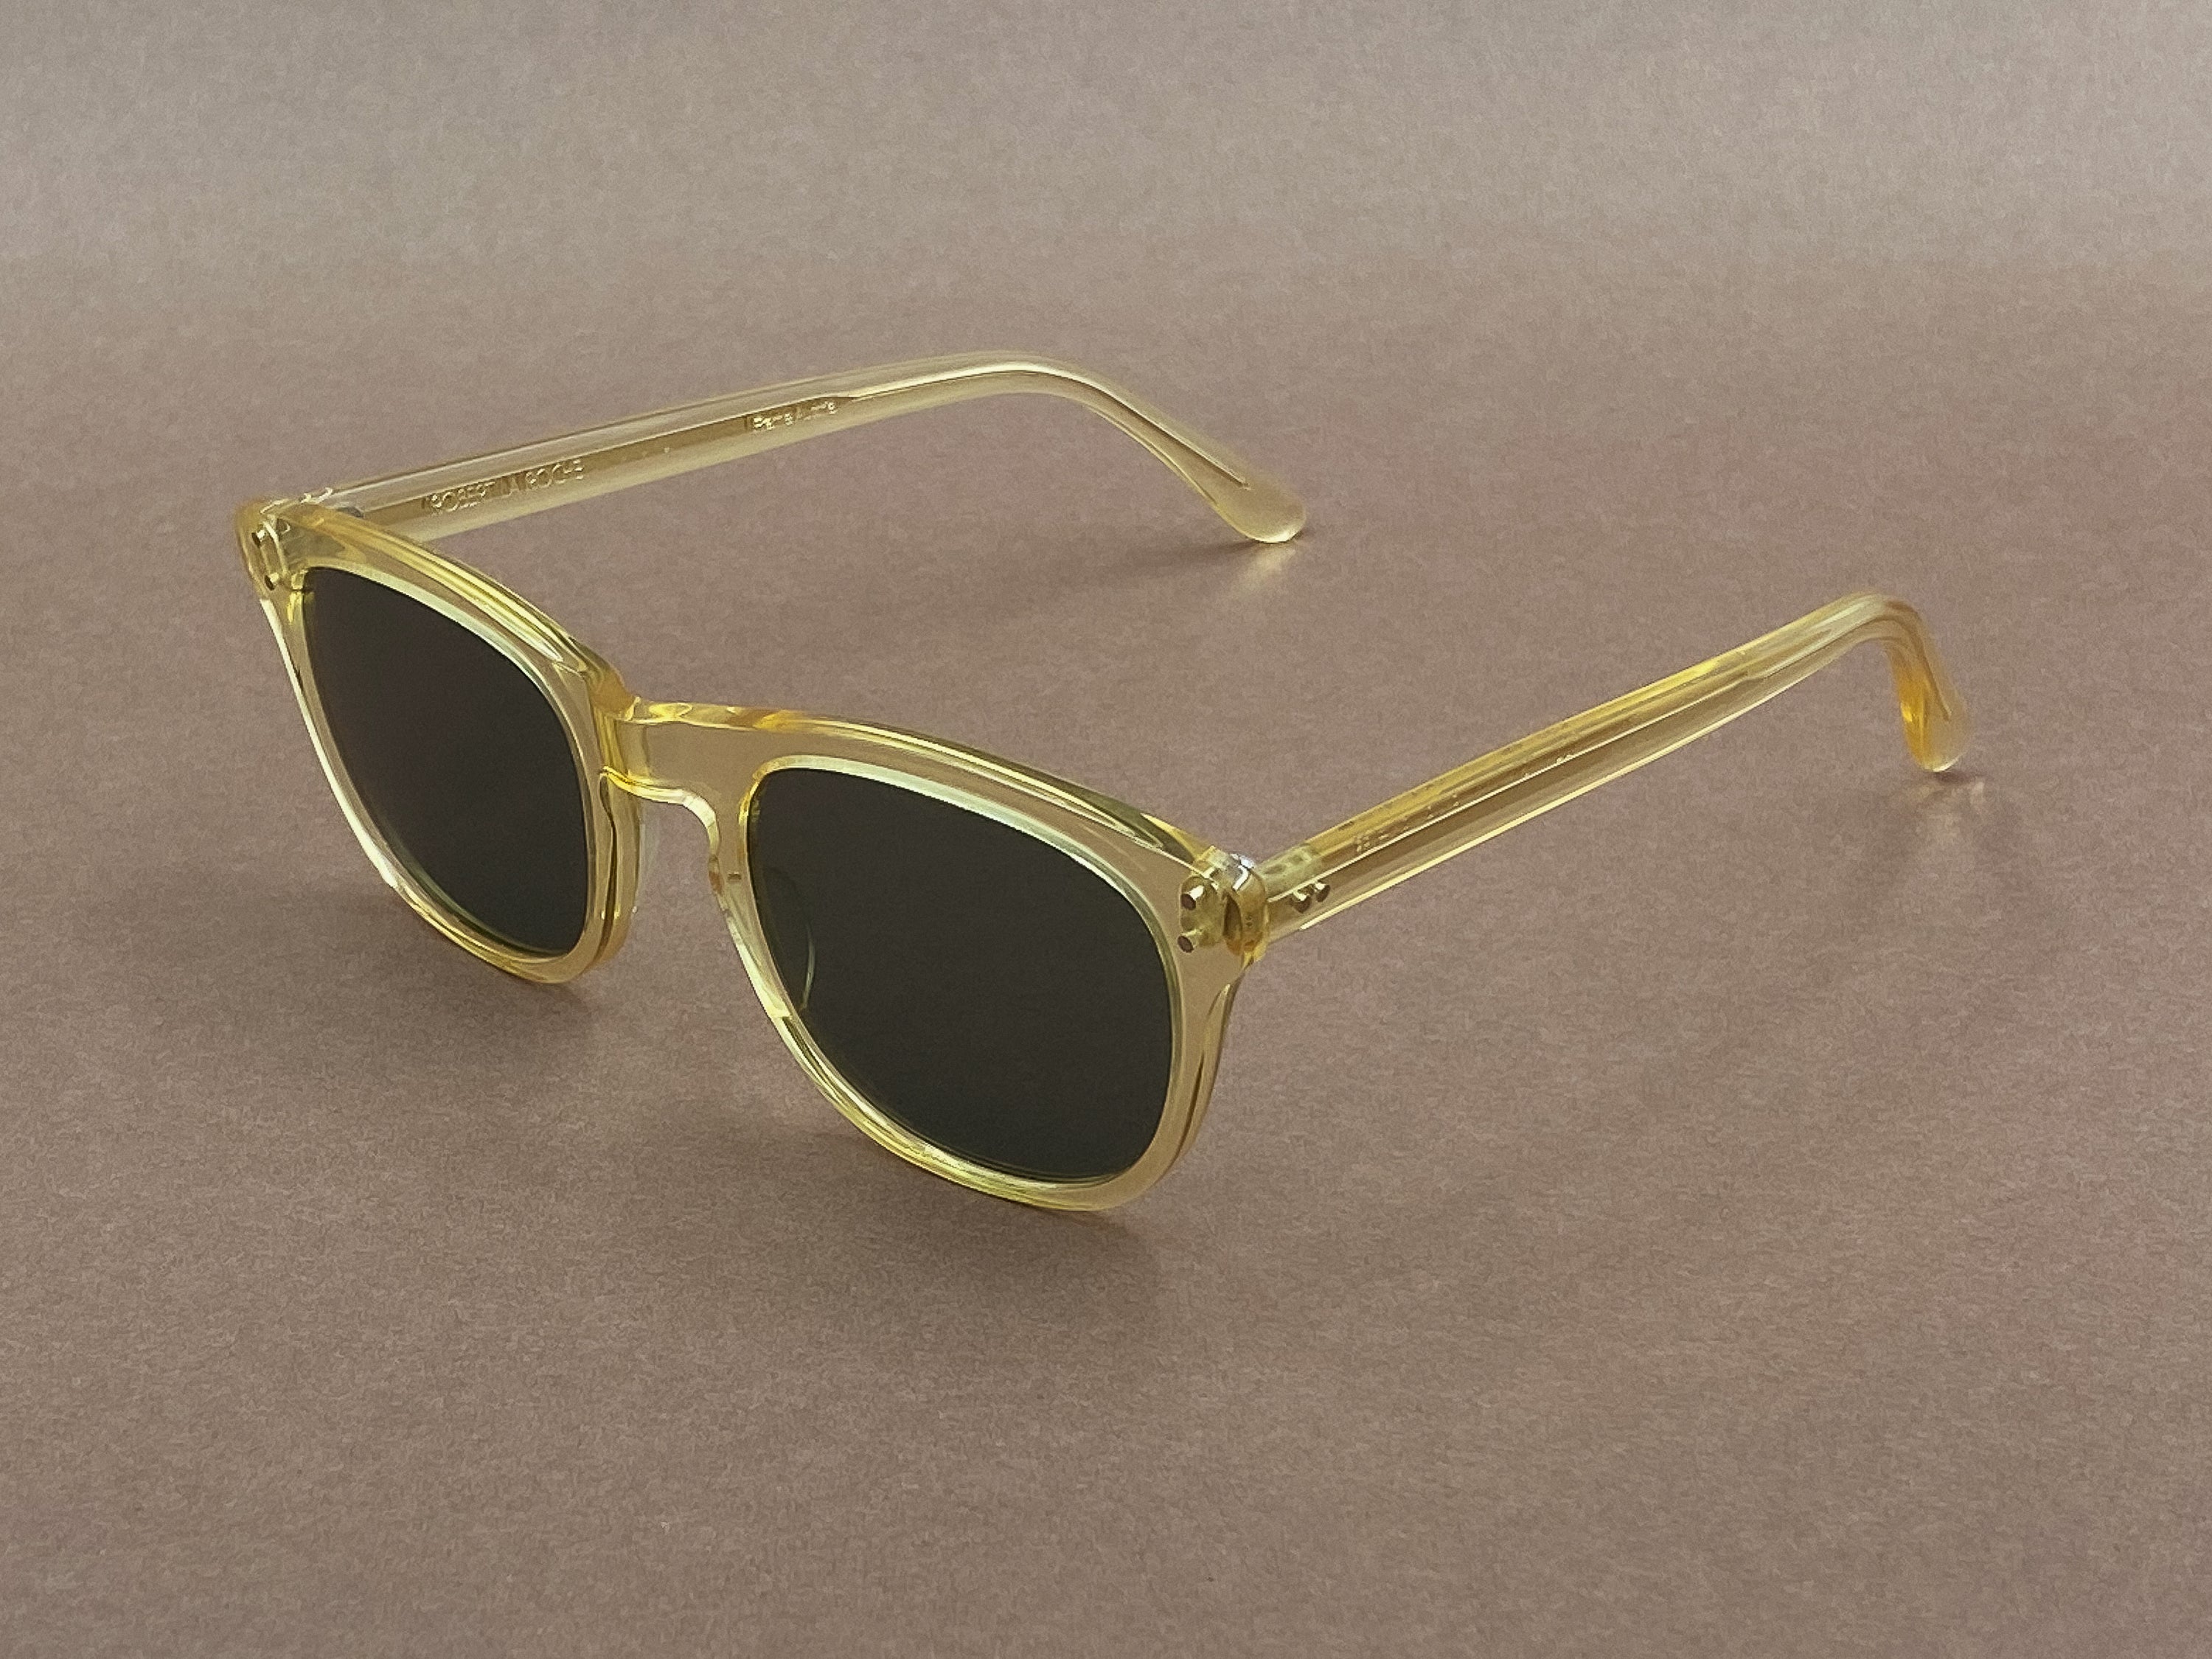 Robert La Roche 404 sunglasses